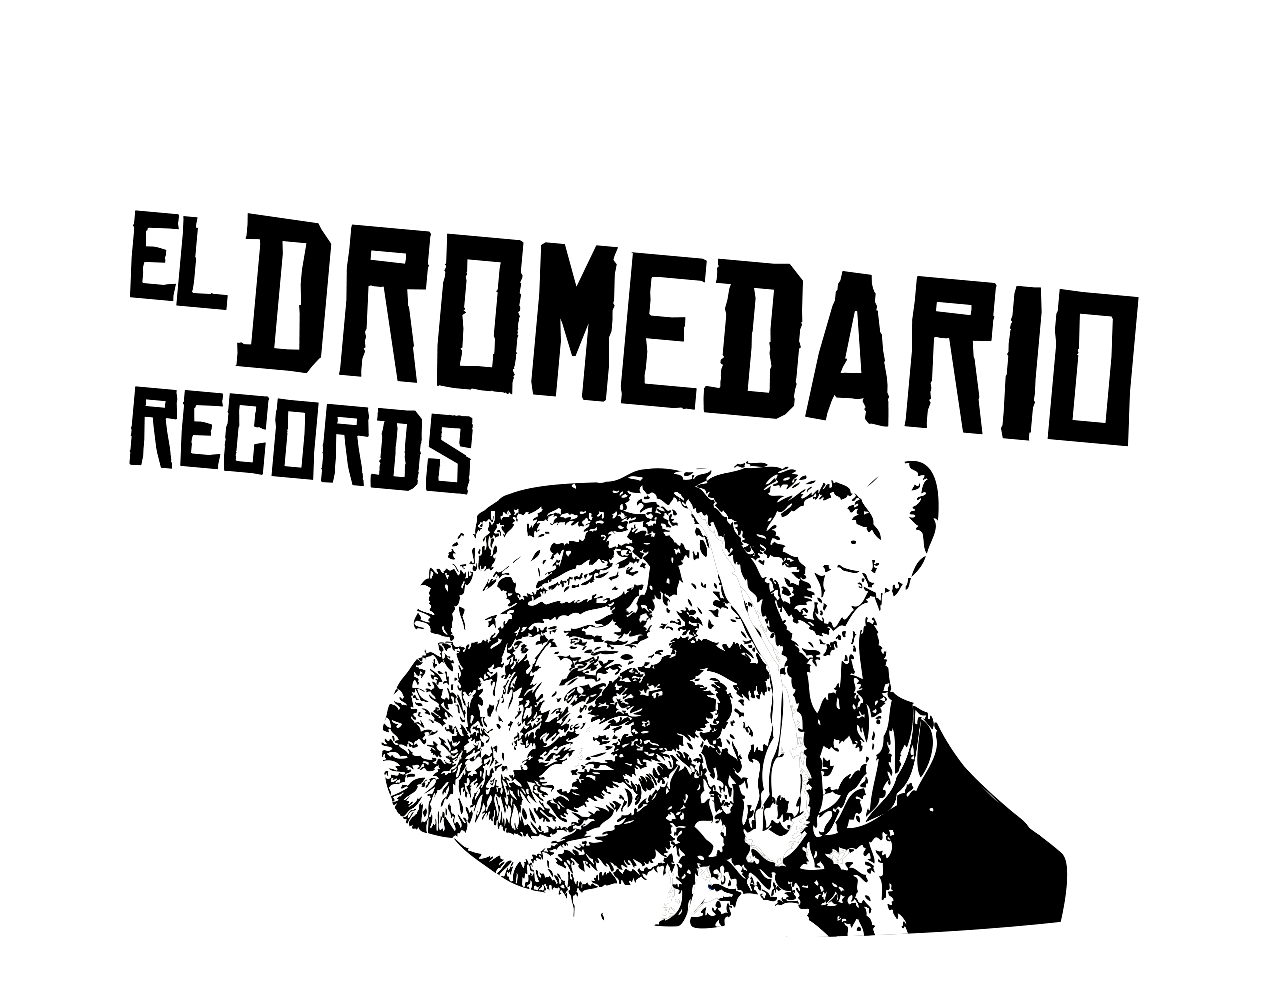 Se nos lleva el aire”, nuevo disco de Robe, a la venta el 15 de diciembre:  preventa ya activada - El Dromedario Records